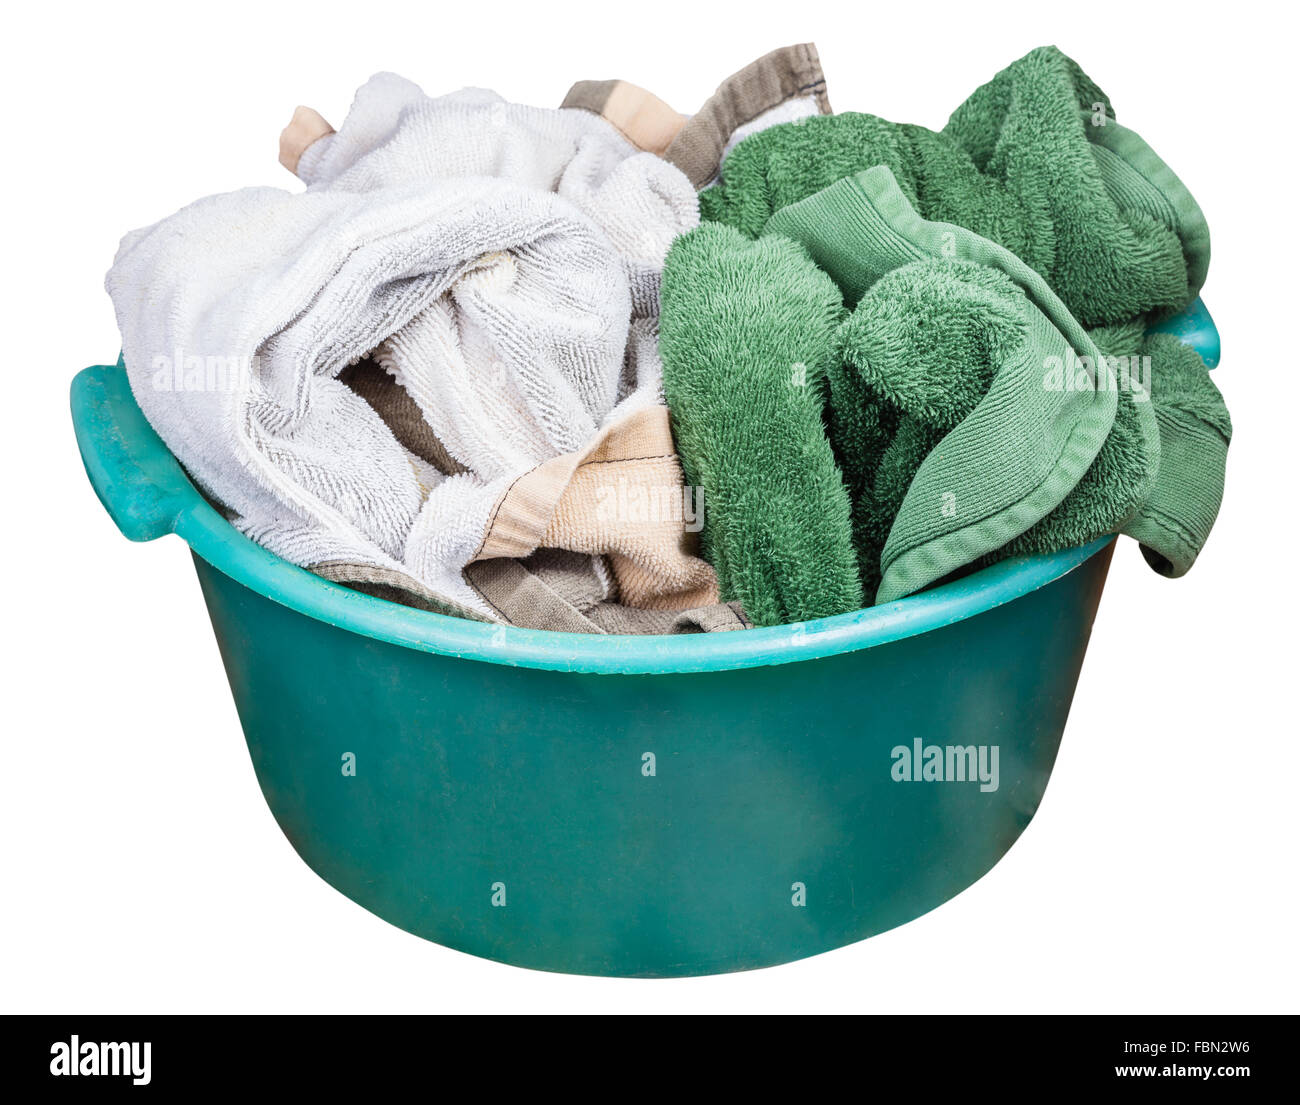 Rotondo plastica verde lavabo con vestiti sporchi isolati su sfondo bianco Foto Stock